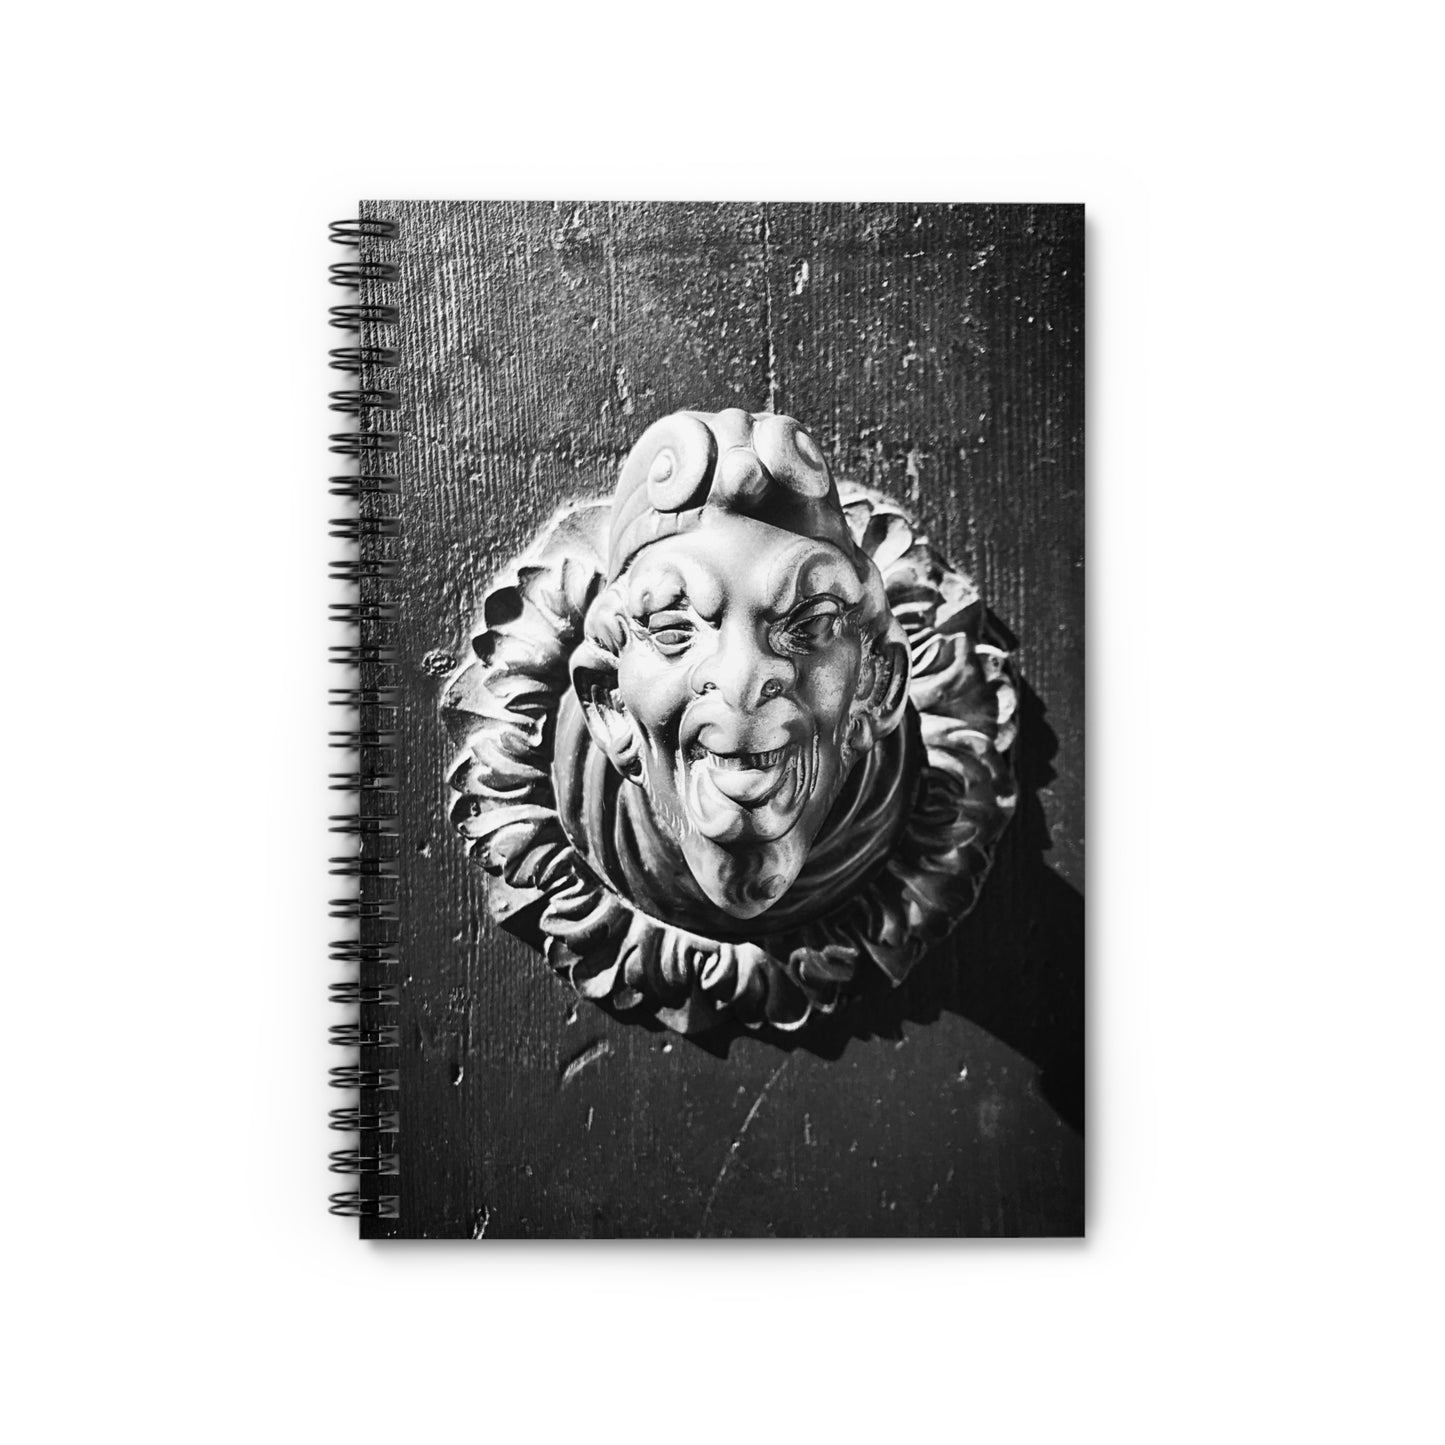 Venetian Door Handle - Spiral Notebook - Ruled Line